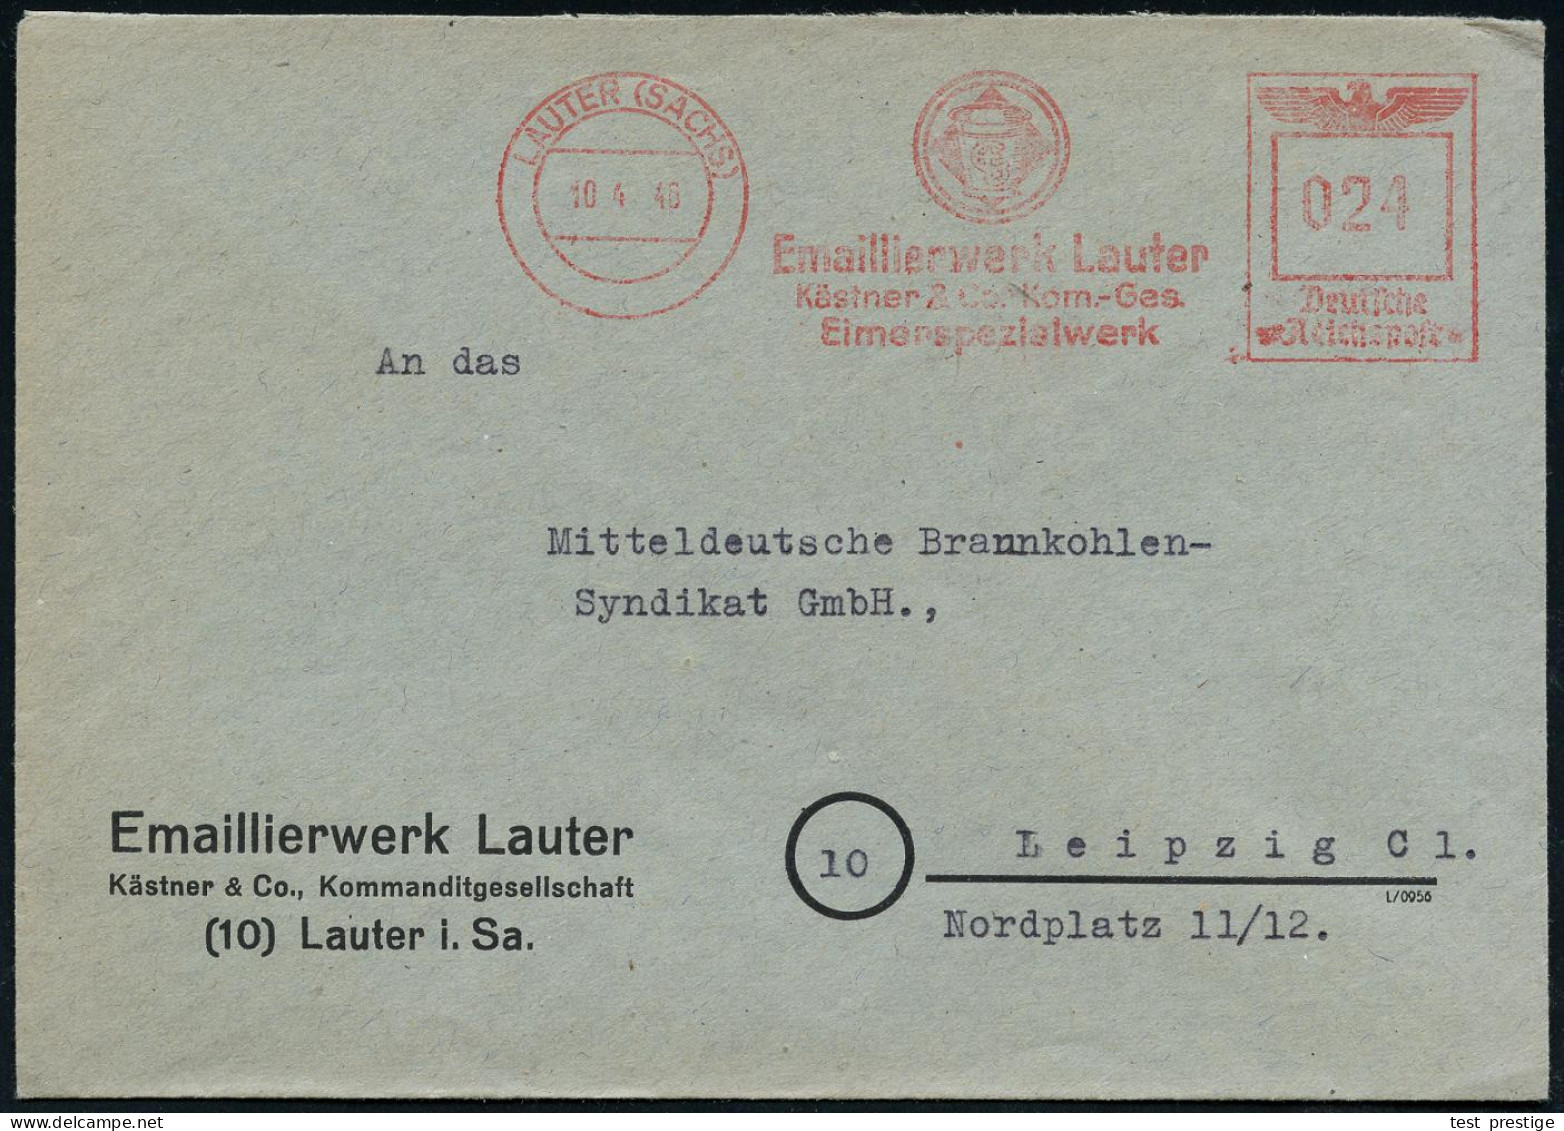 LAUTER (SACHS)/ Emaillierwerk Lauter/ Kästner & Co, Kom.-Ges./ Eimerspezialwerk 1946 (10.4.) Seltener AFS Francotyp "Rei - Chimie